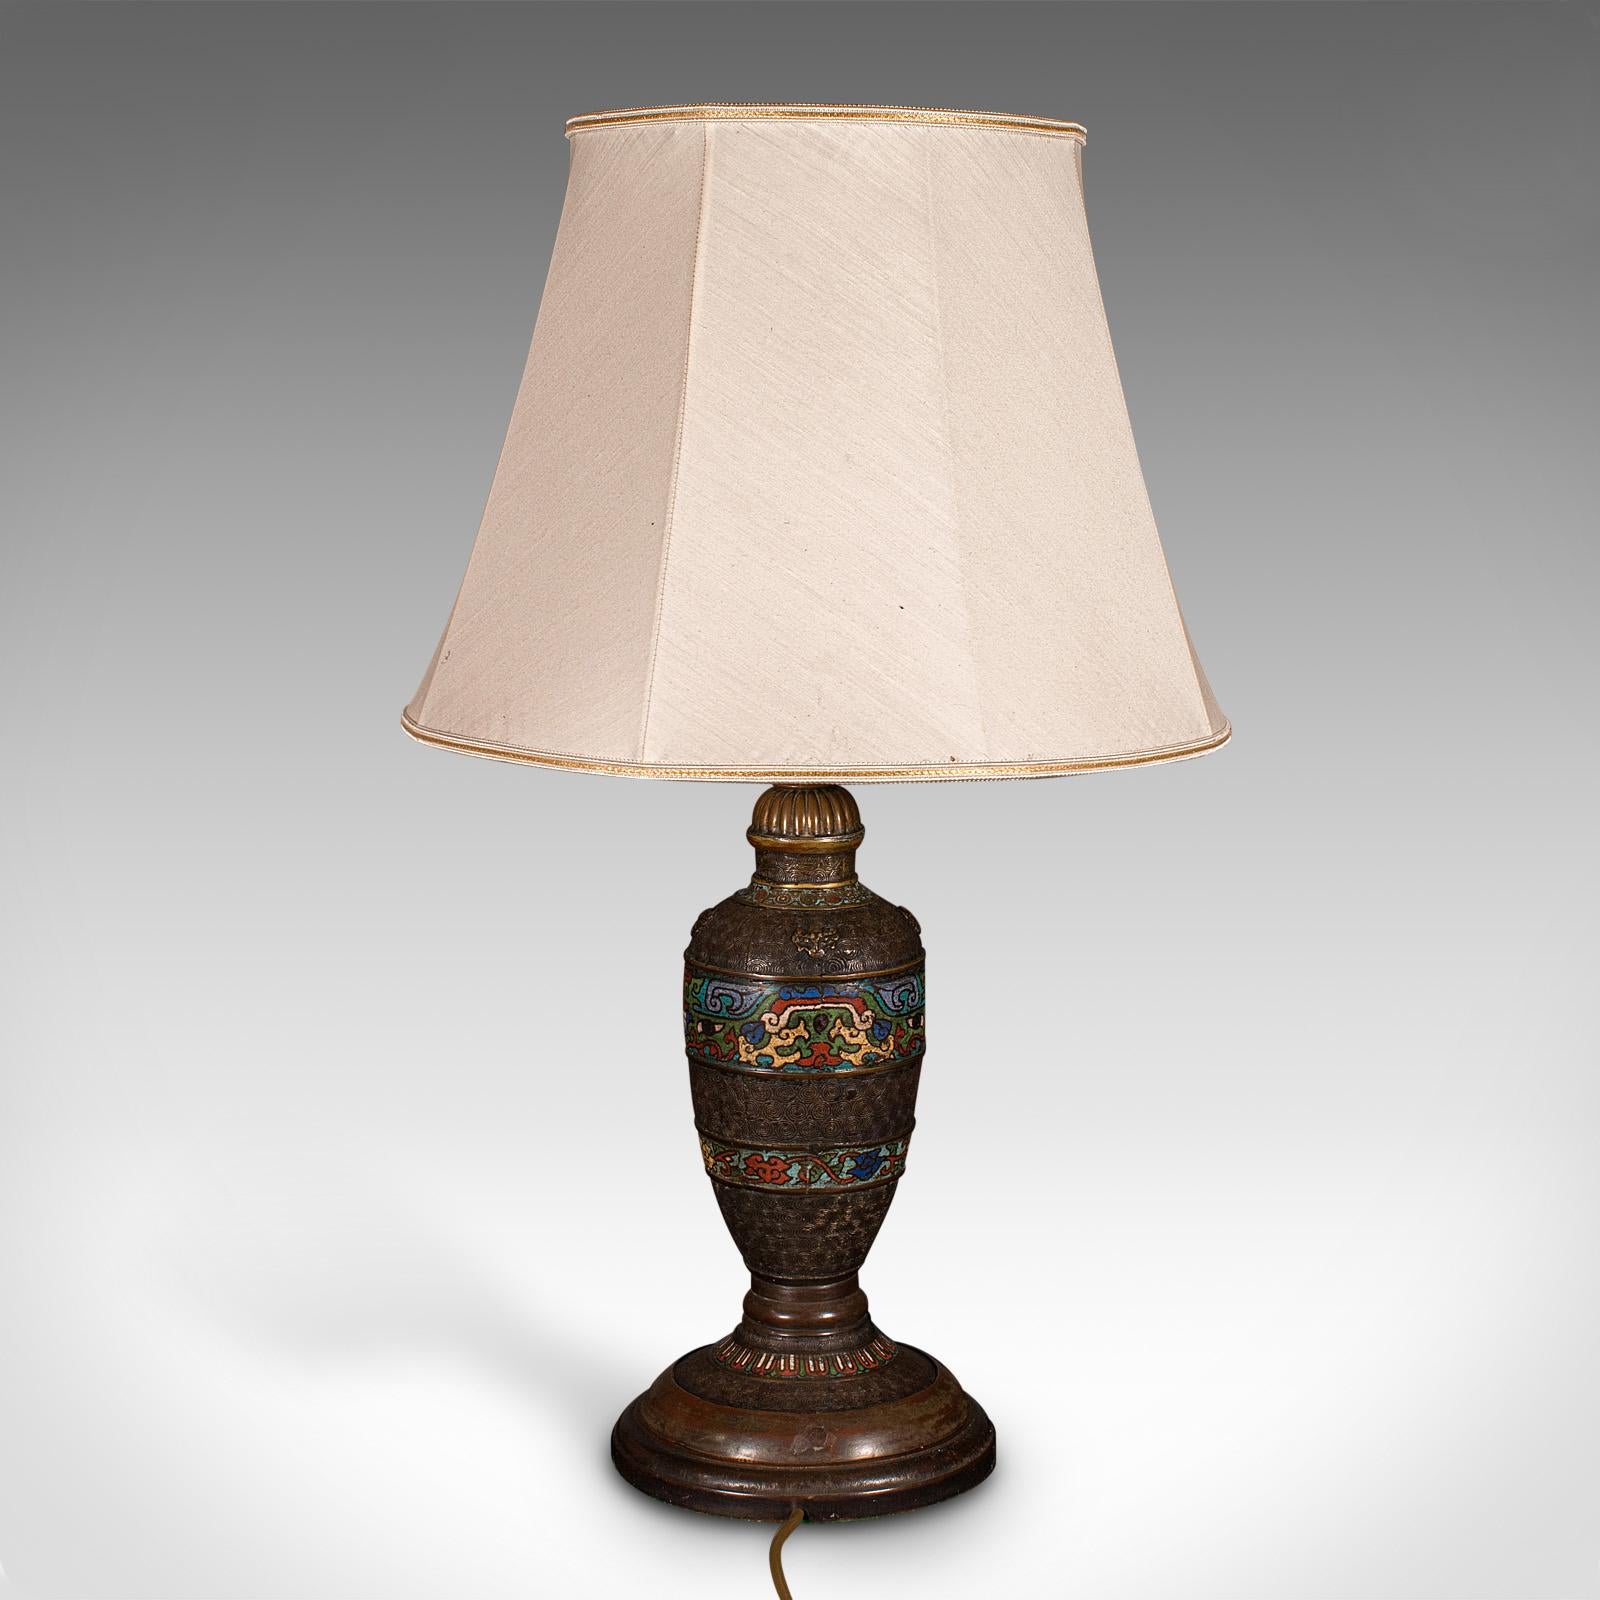 Antique Cloisonne Lamp, Japanese, Bronze, Table Light, Victorian, Meiji, C.1850 For Sale 1